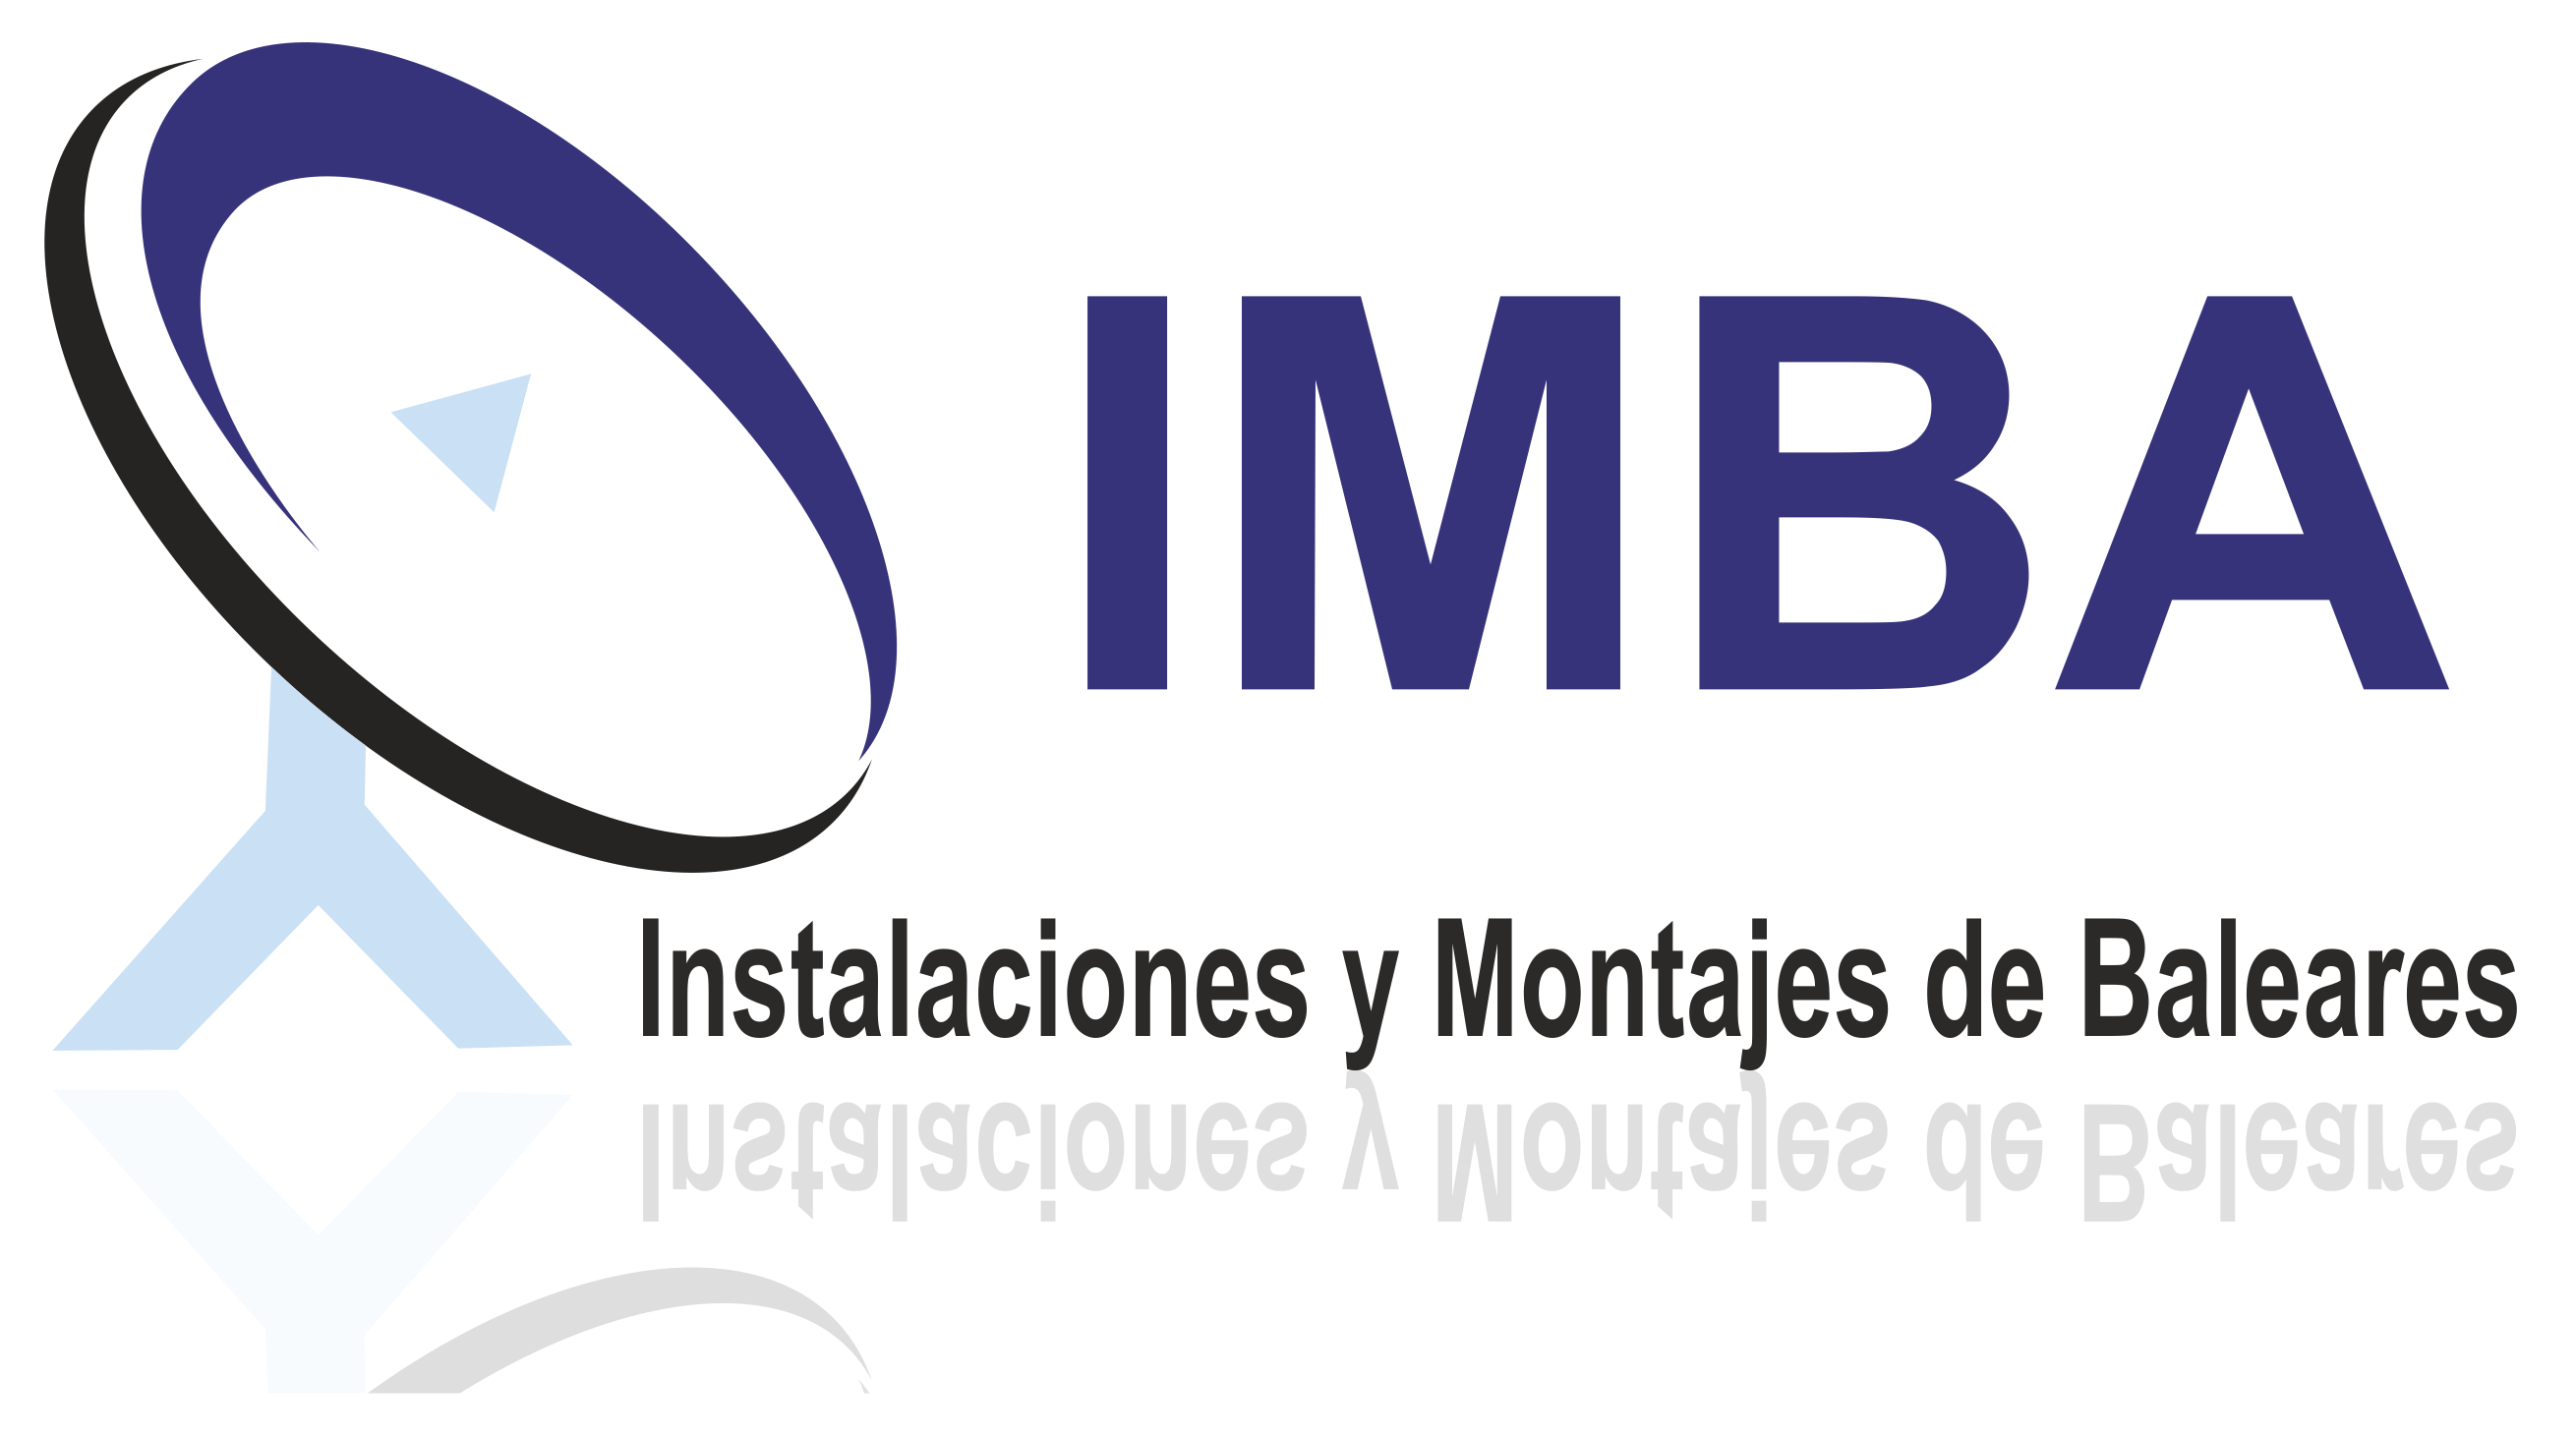 IMBA Instalaciones y Montajes de Baleares